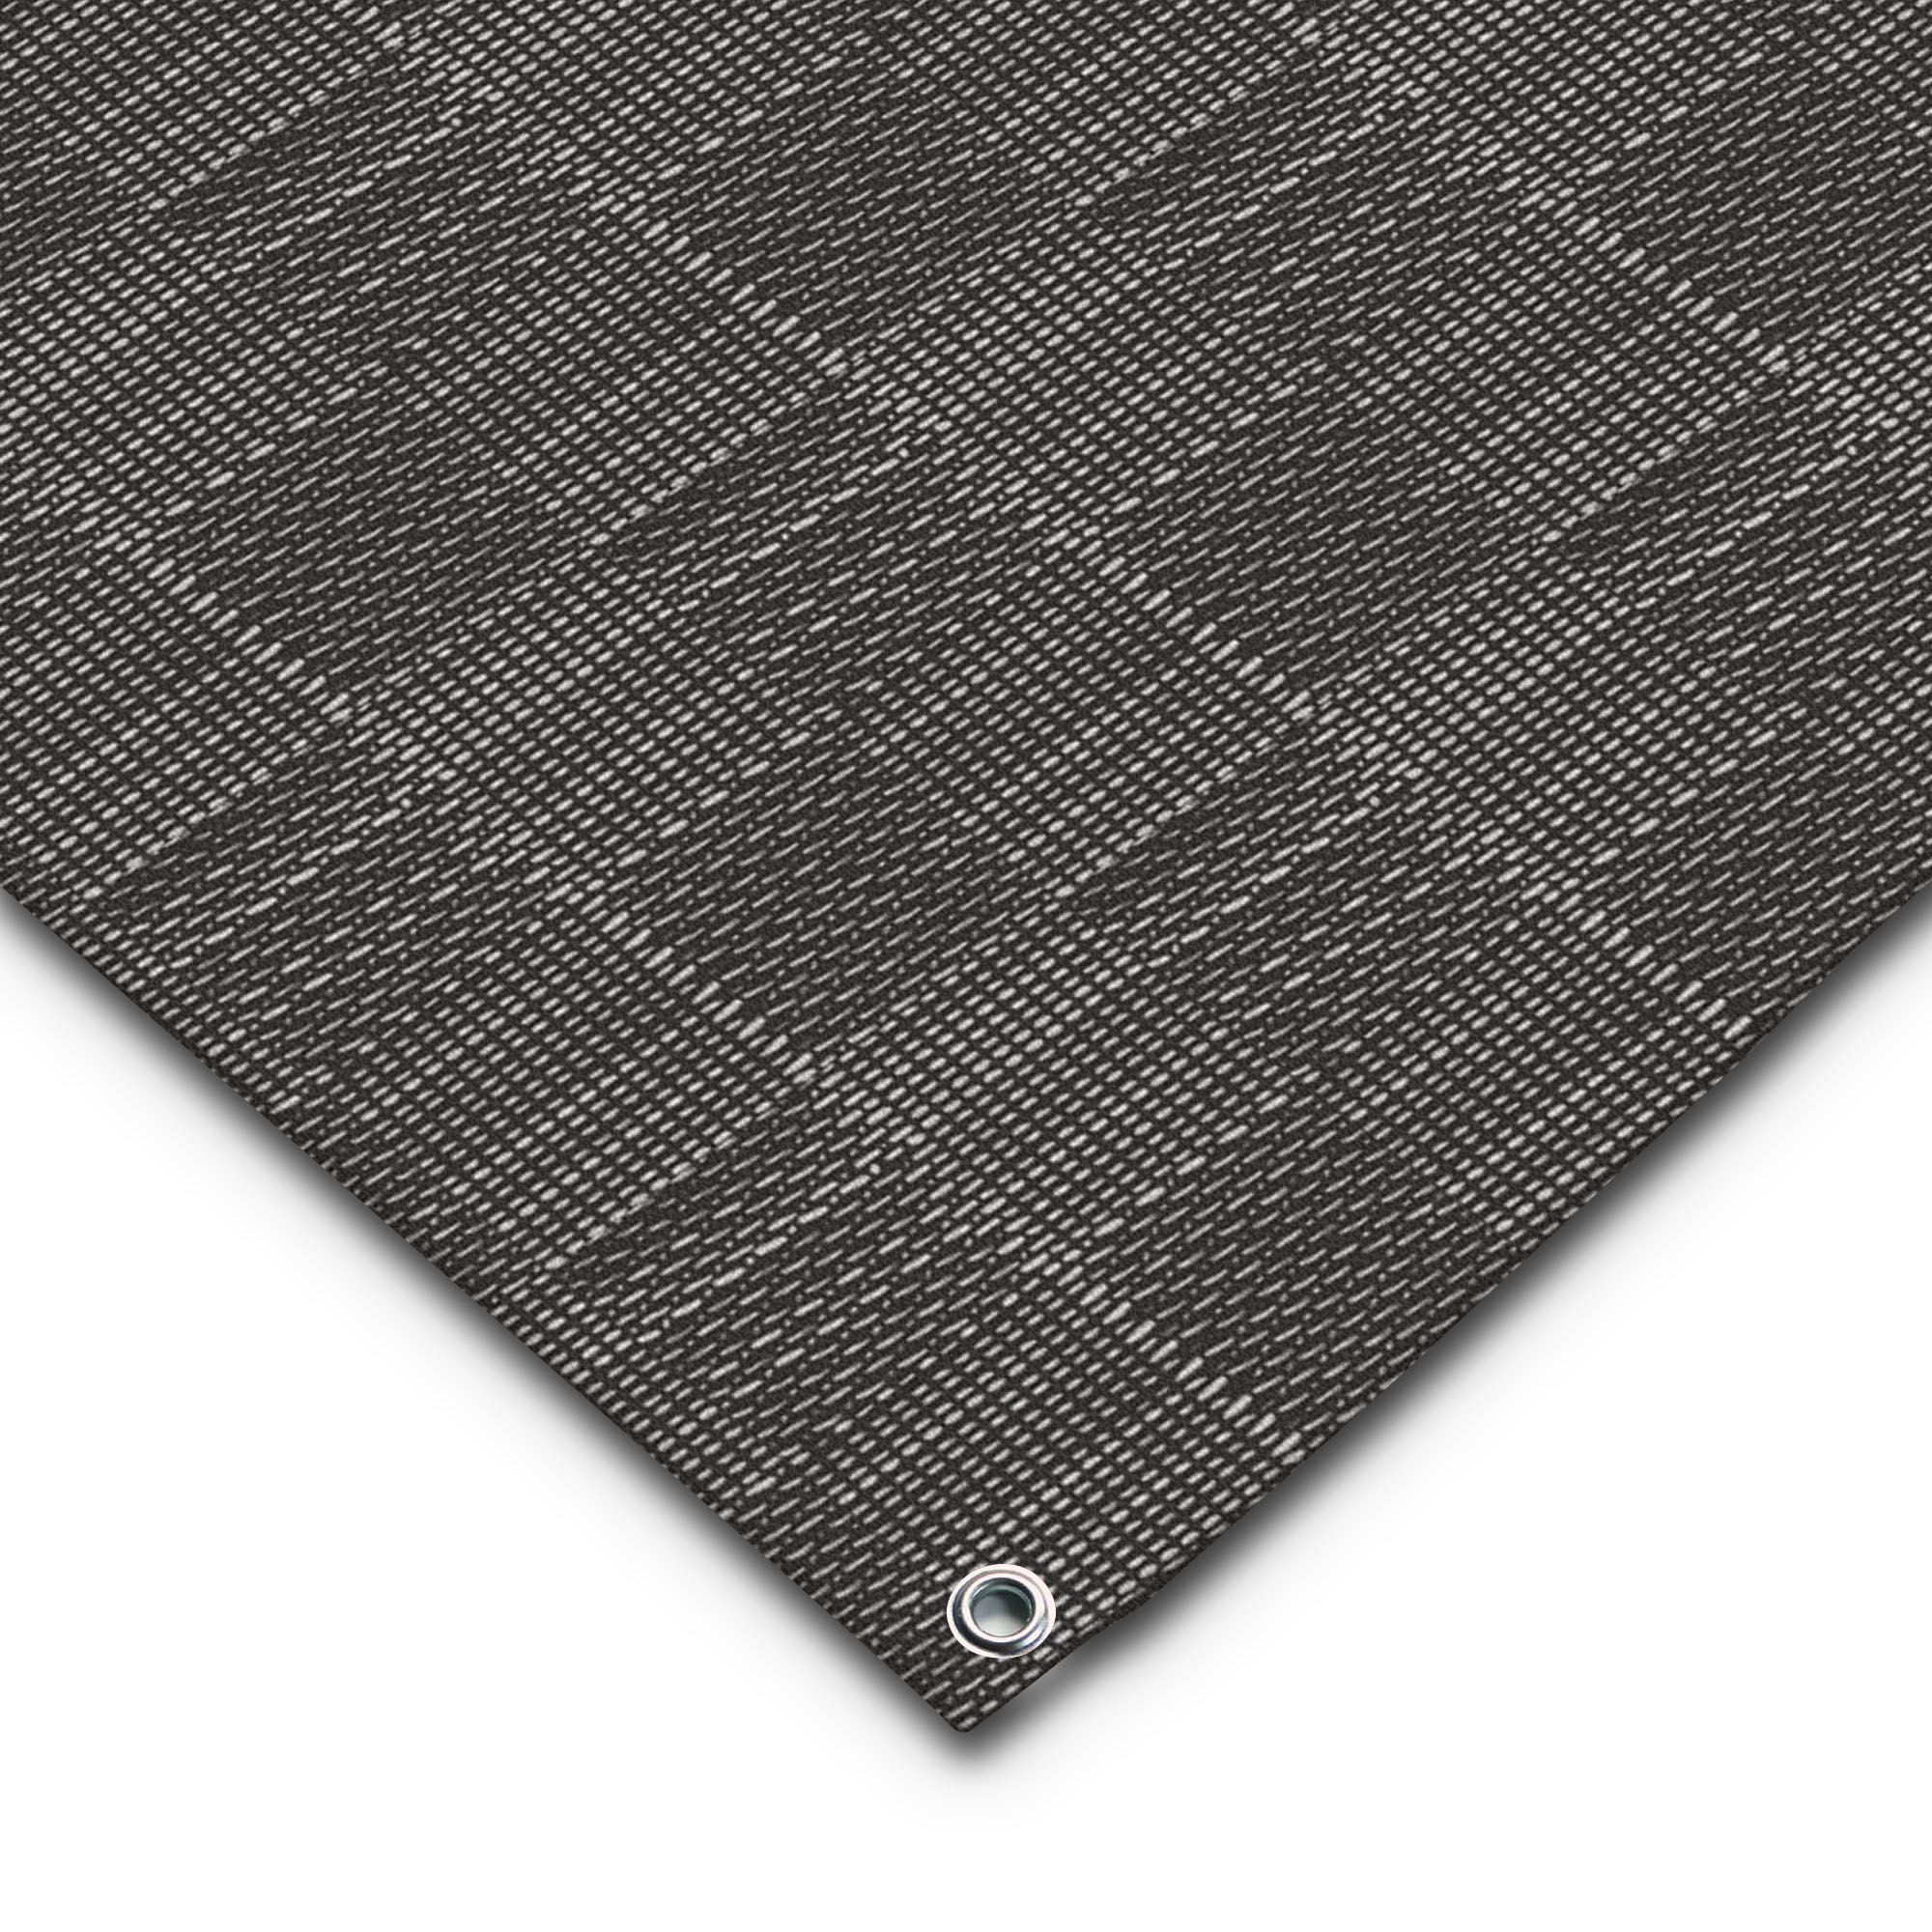 Ausschnitt Vorzeltteppich in grau gemustert mit Befestigungsöse.